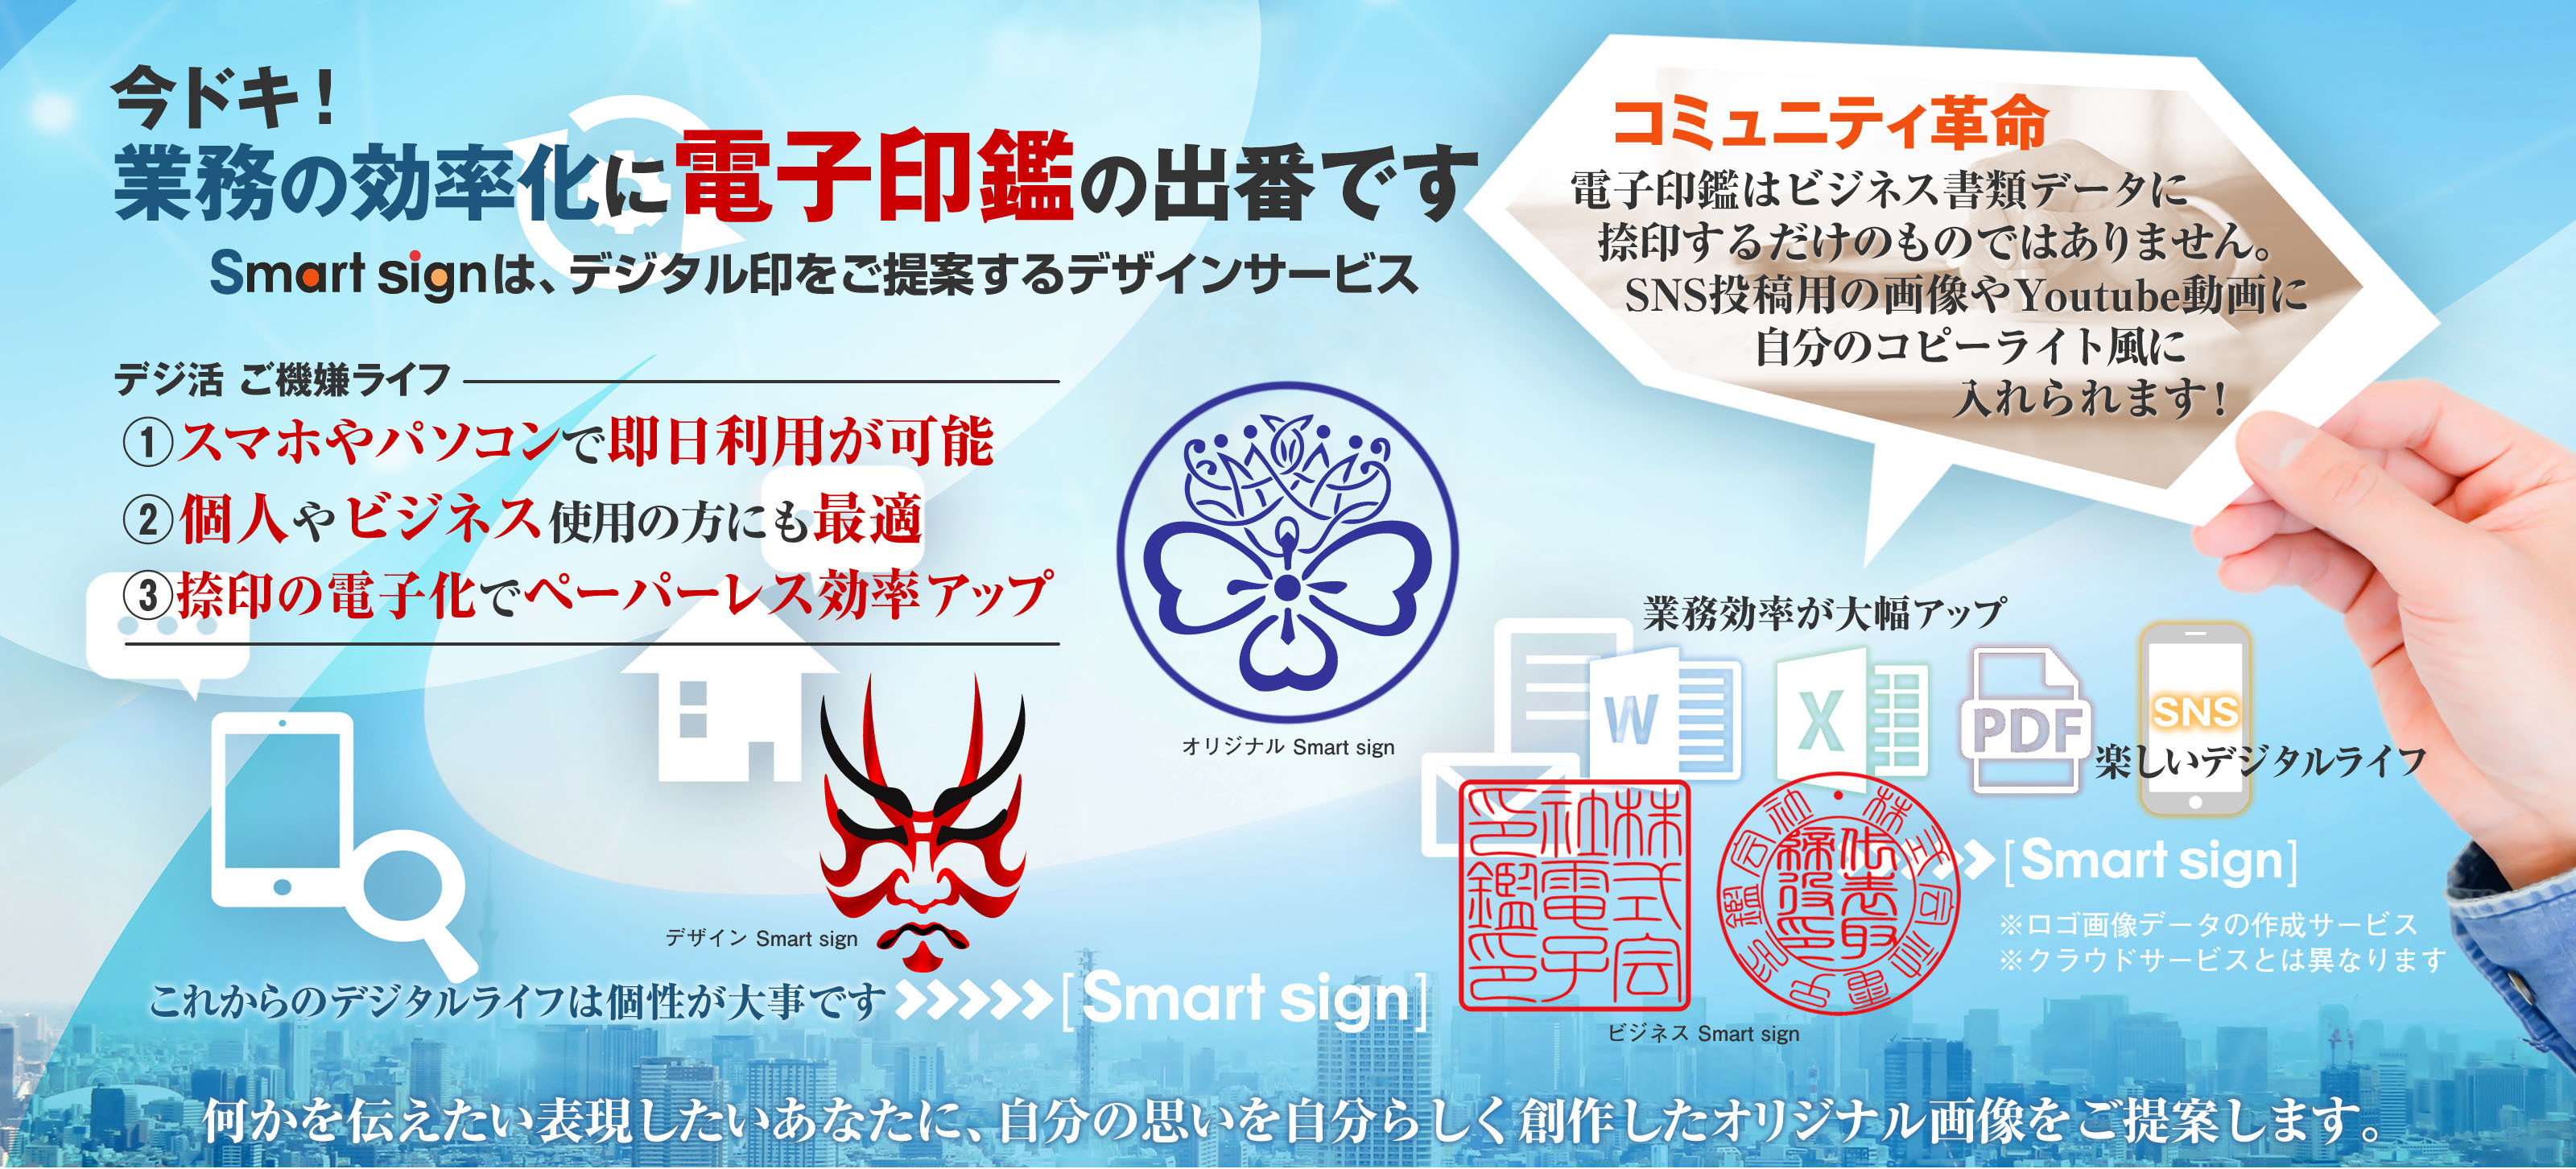 電子印鑑オンライン作成サービス Fashionable electronic seal stamp service